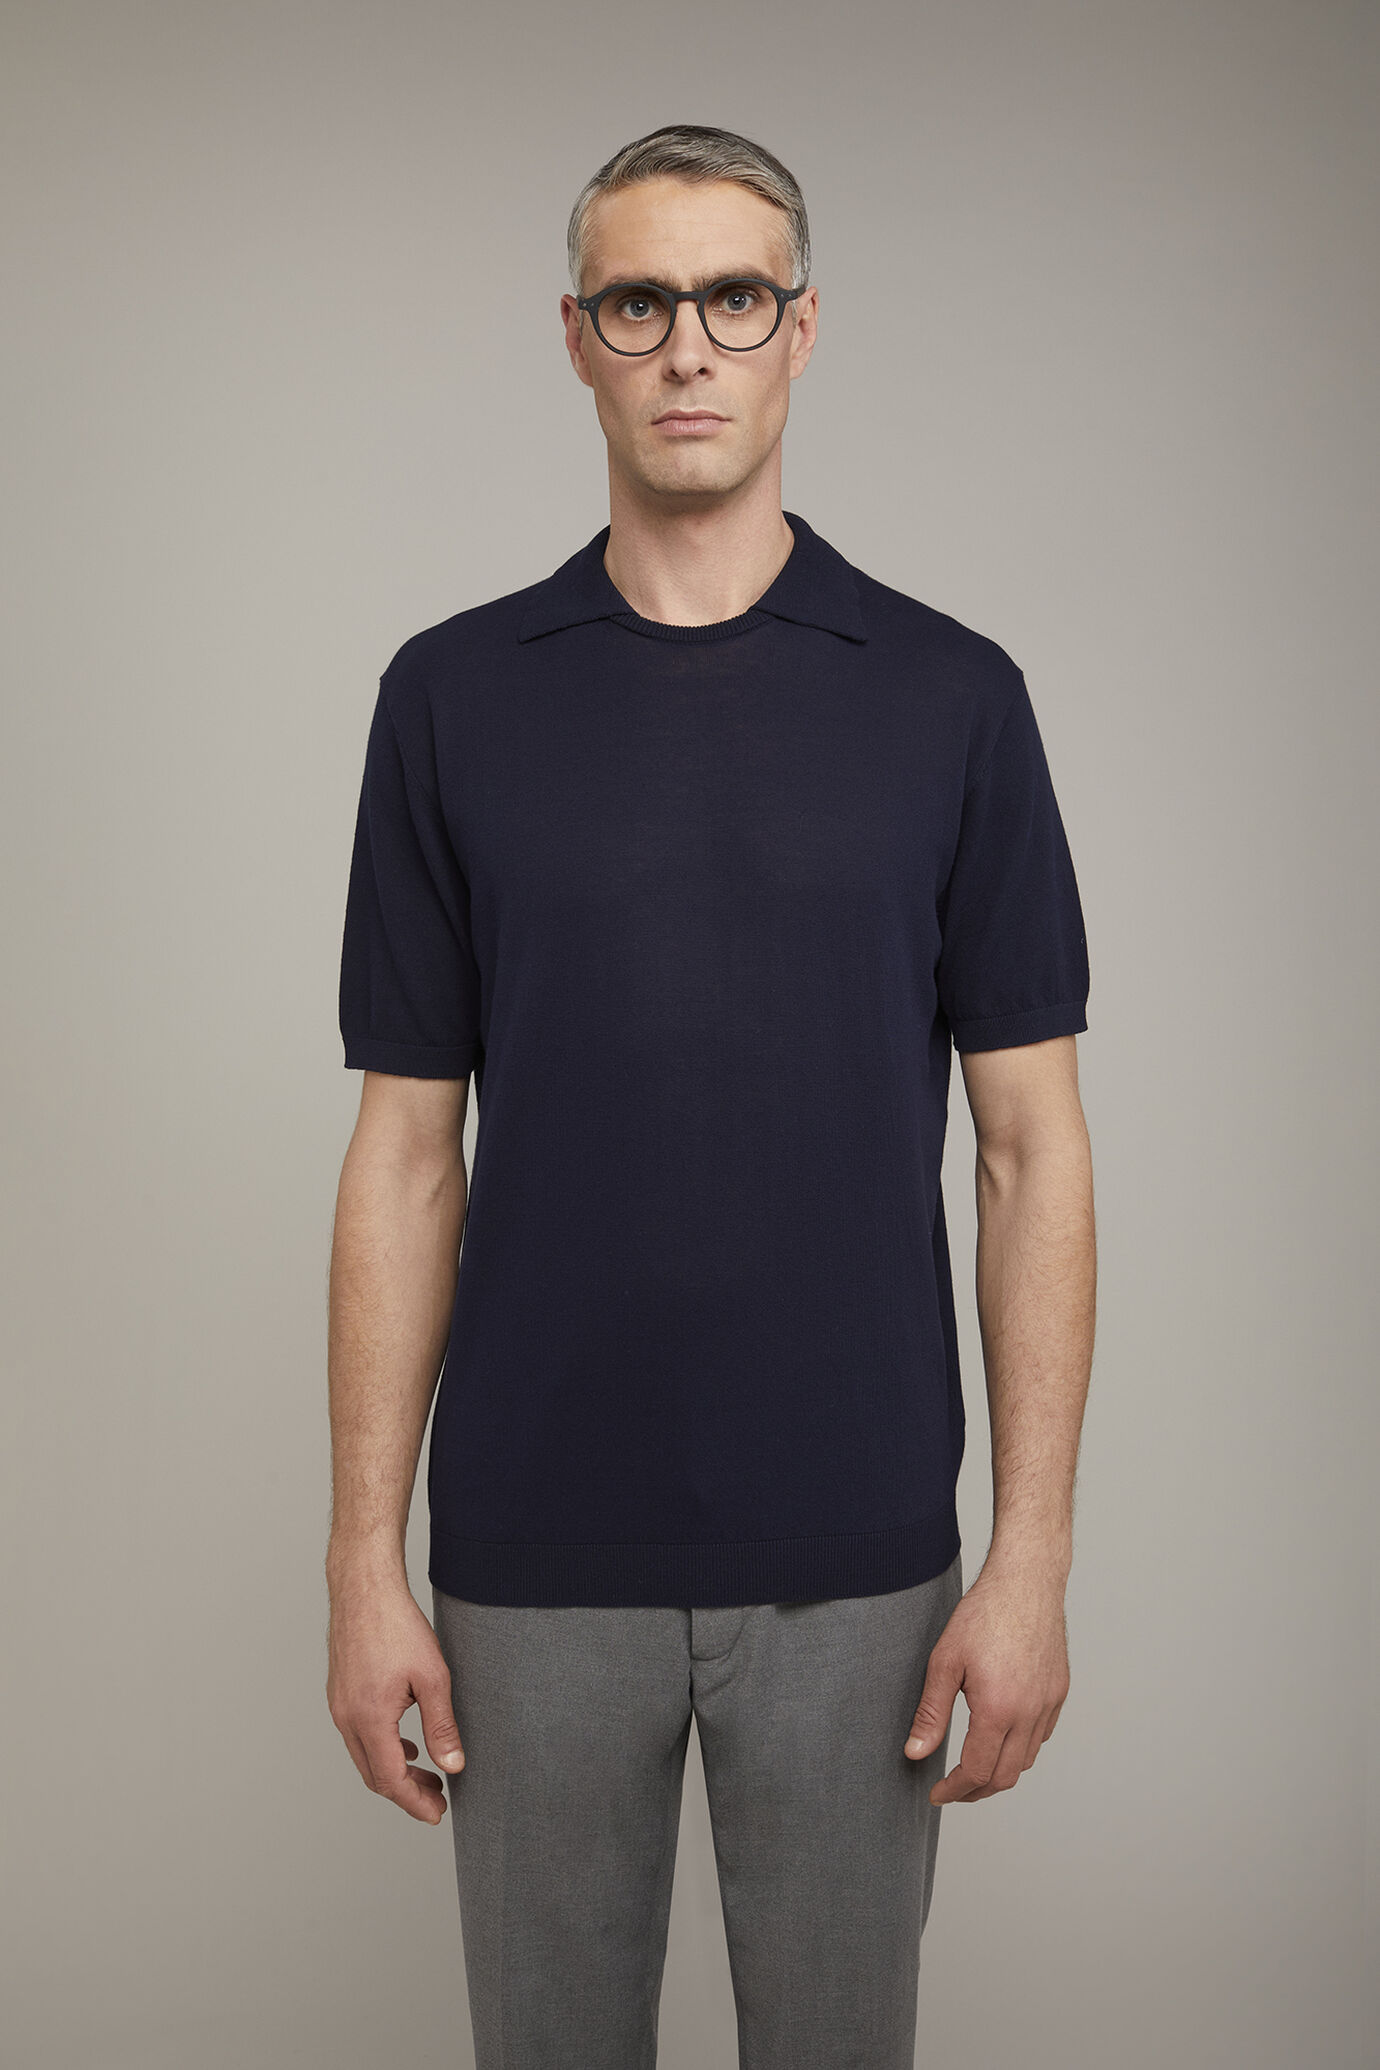 Herren-Poloshirt mit Rundhalsausschnitt und kurzen Ärmeln aus 100 % Baumwolle in normaler Passform